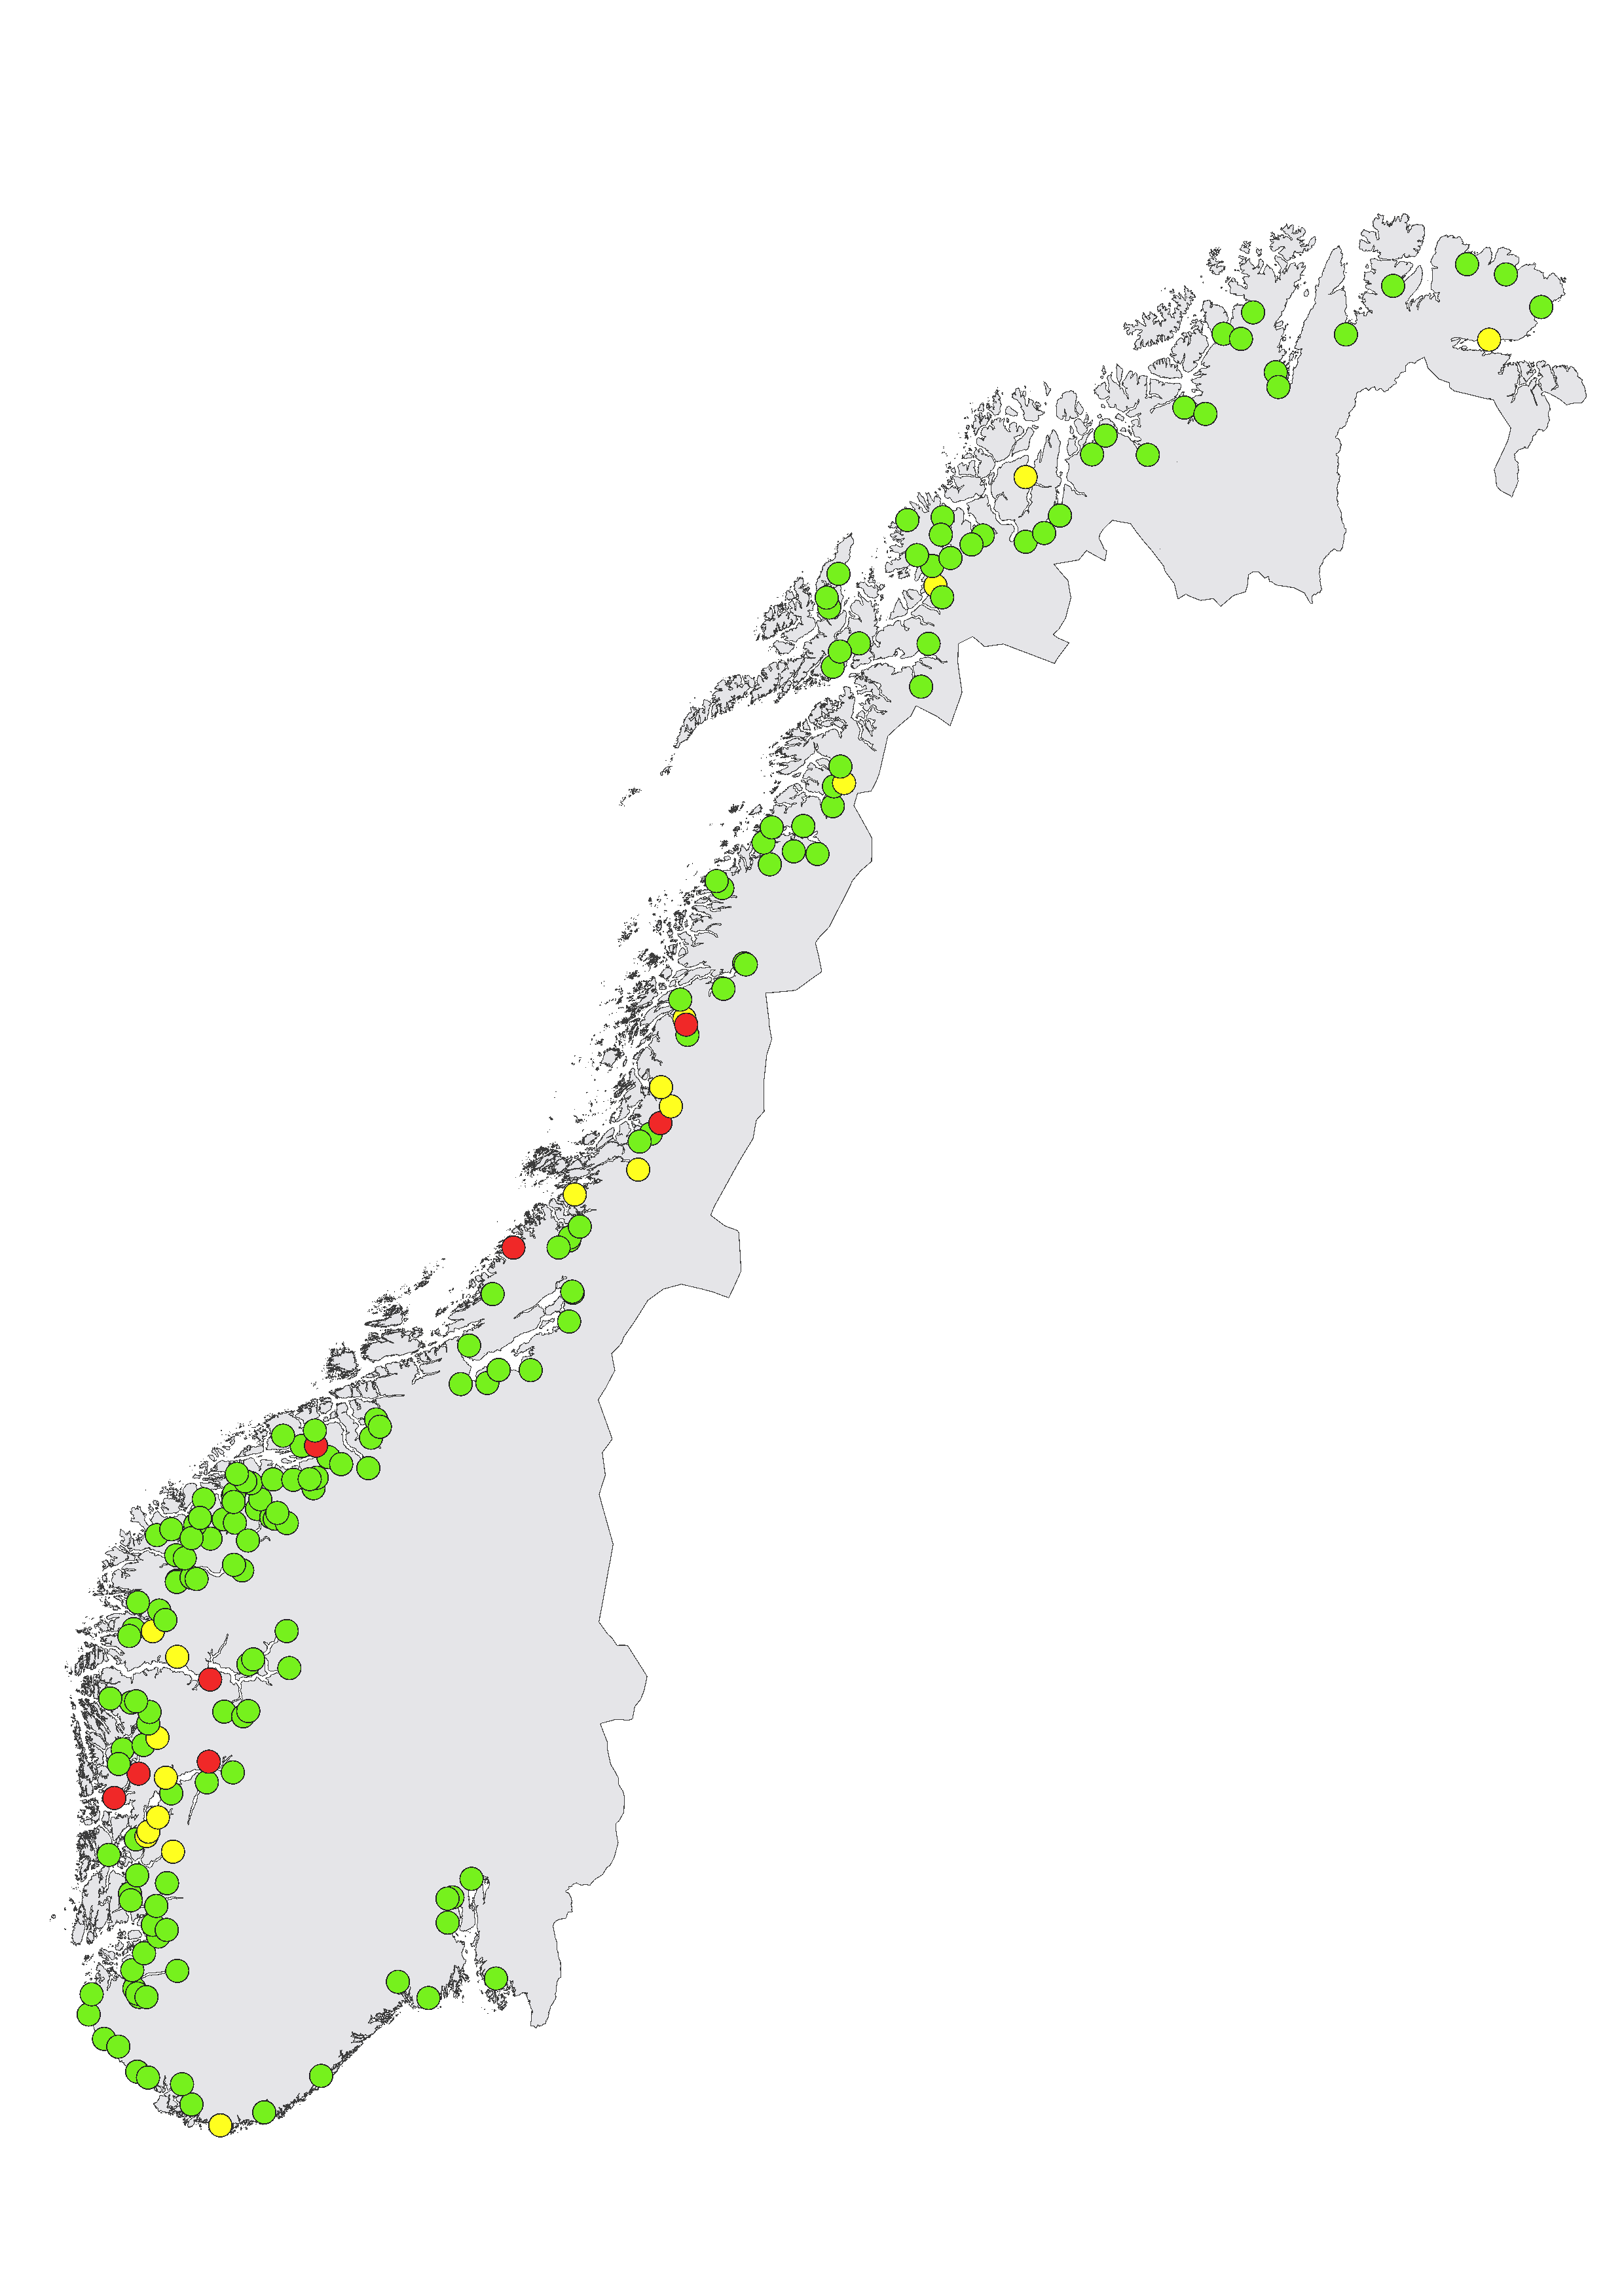 Kartet viser lokalisering av elvene der innslaget av rømt oppdrettslaks er vurdert til å være lavt (< 4 %, grønne sirkler), middels (4 – 10 %, gule sirkler), eller høyt (>10 %, røde sirkler).